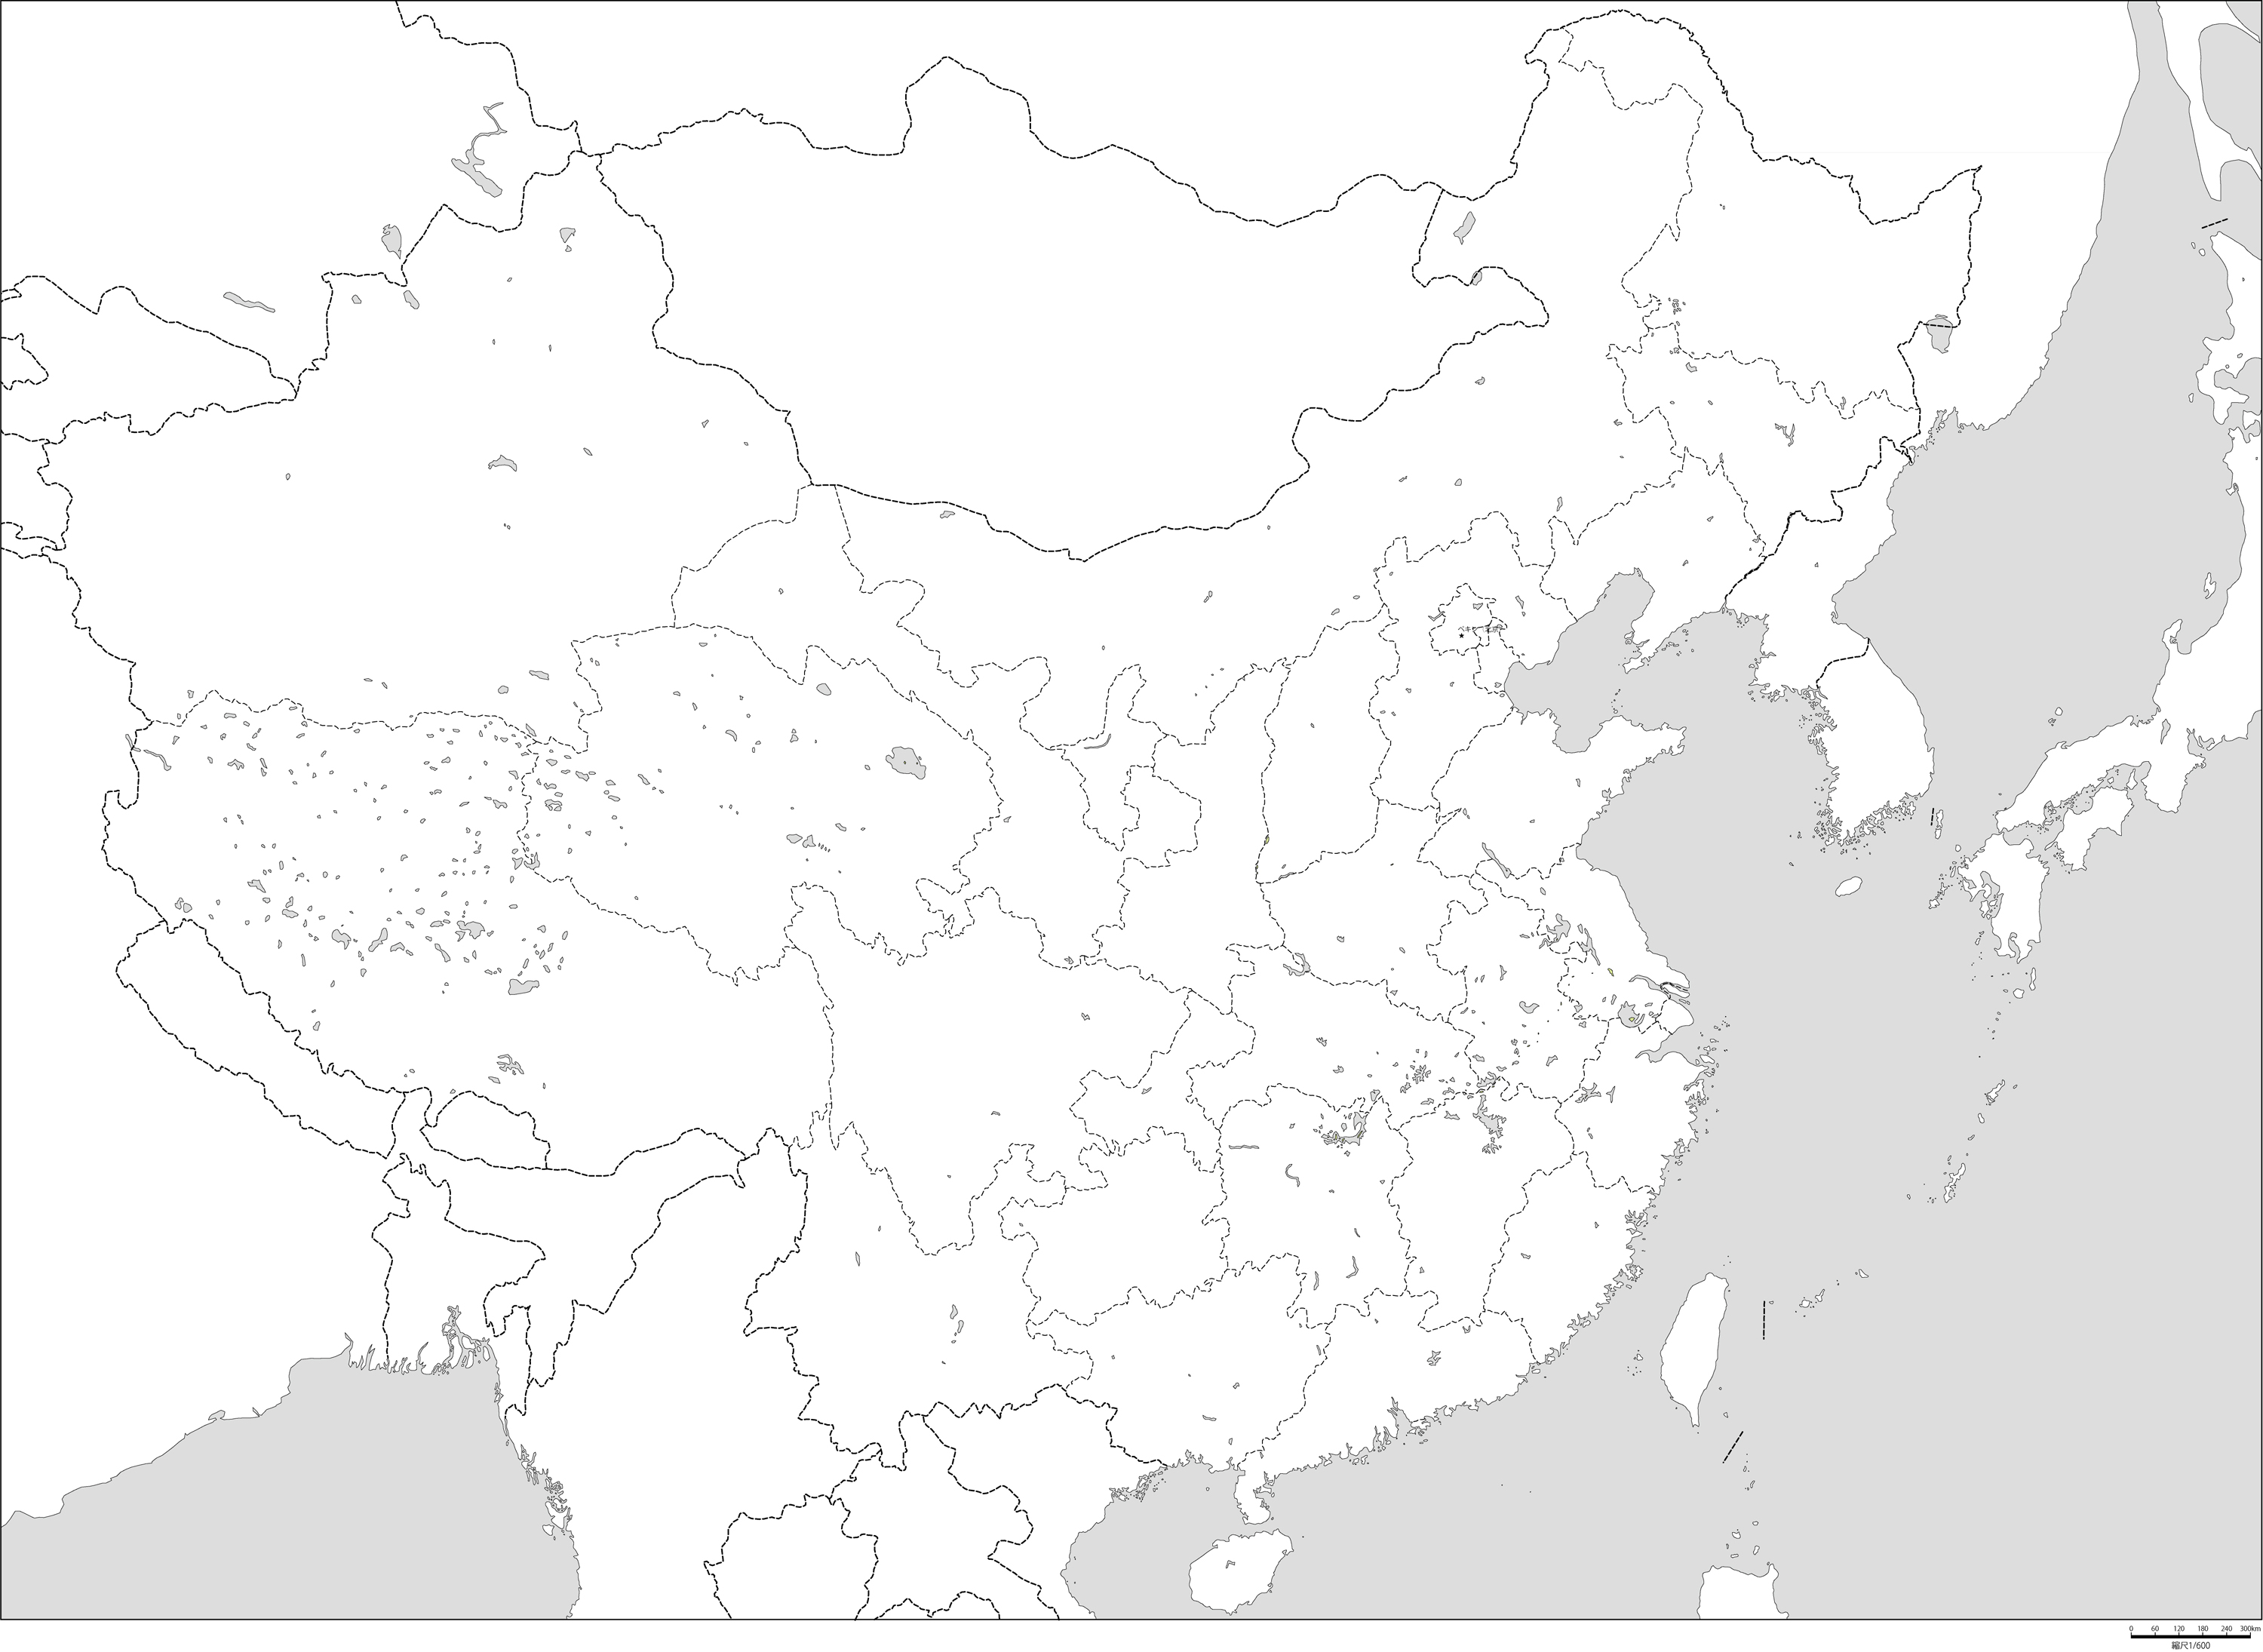 中華人民共和国行政区分全土白地図(首都あり)の画像